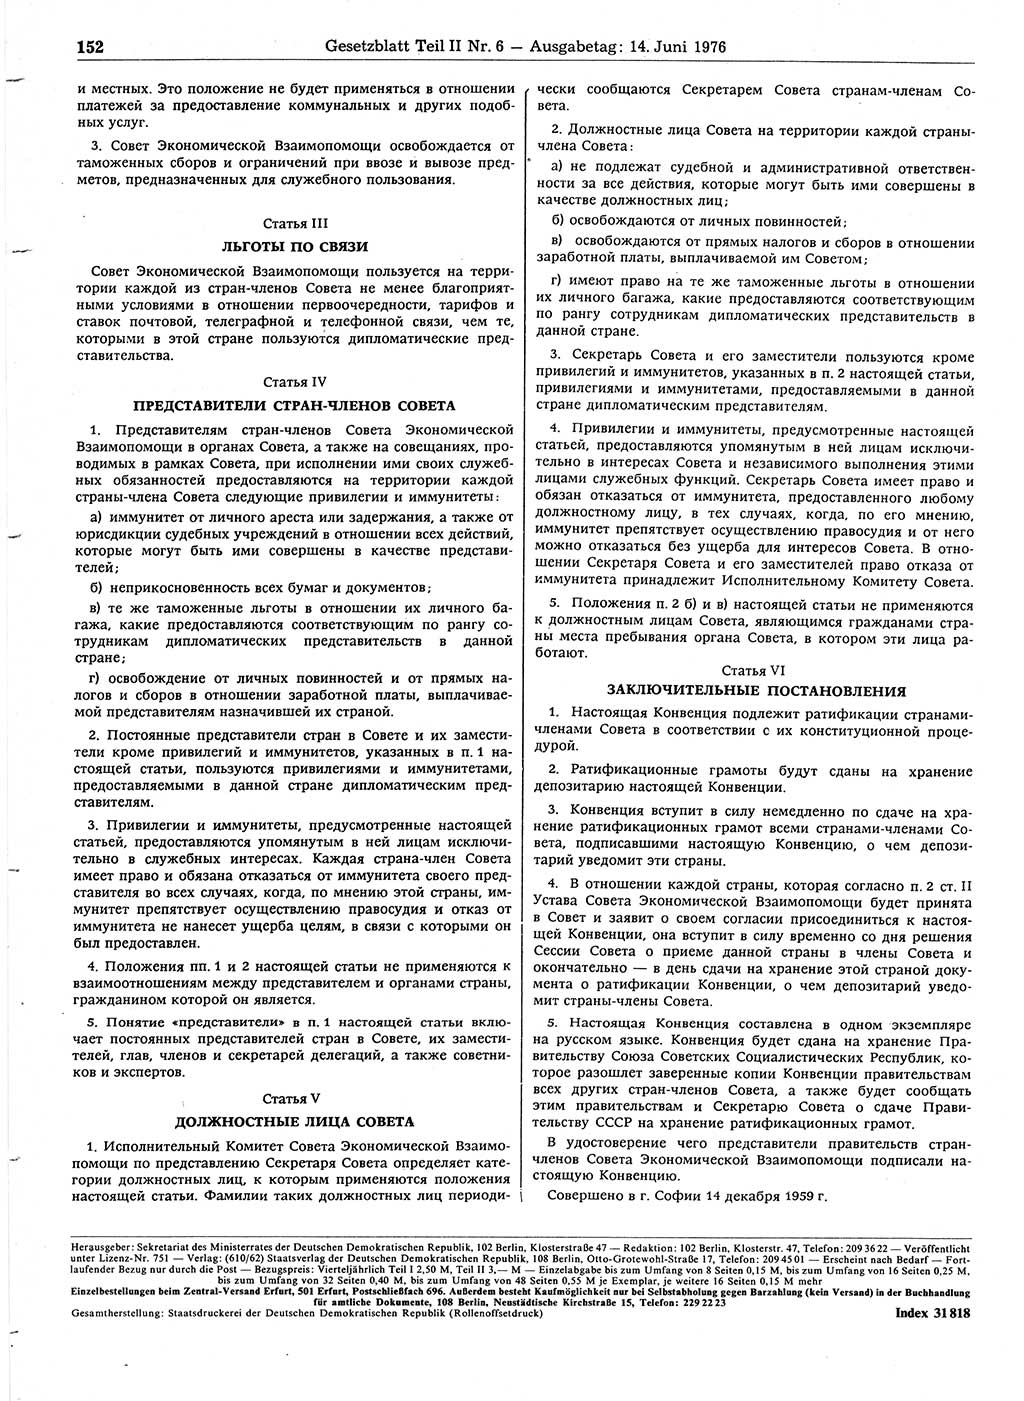 Gesetzblatt (GBl.) der Deutschen Demokratischen Republik (DDR) Teil ⅠⅠ 1976, Seite 152 (GBl. DDR ⅠⅠ 1976, S. 152)